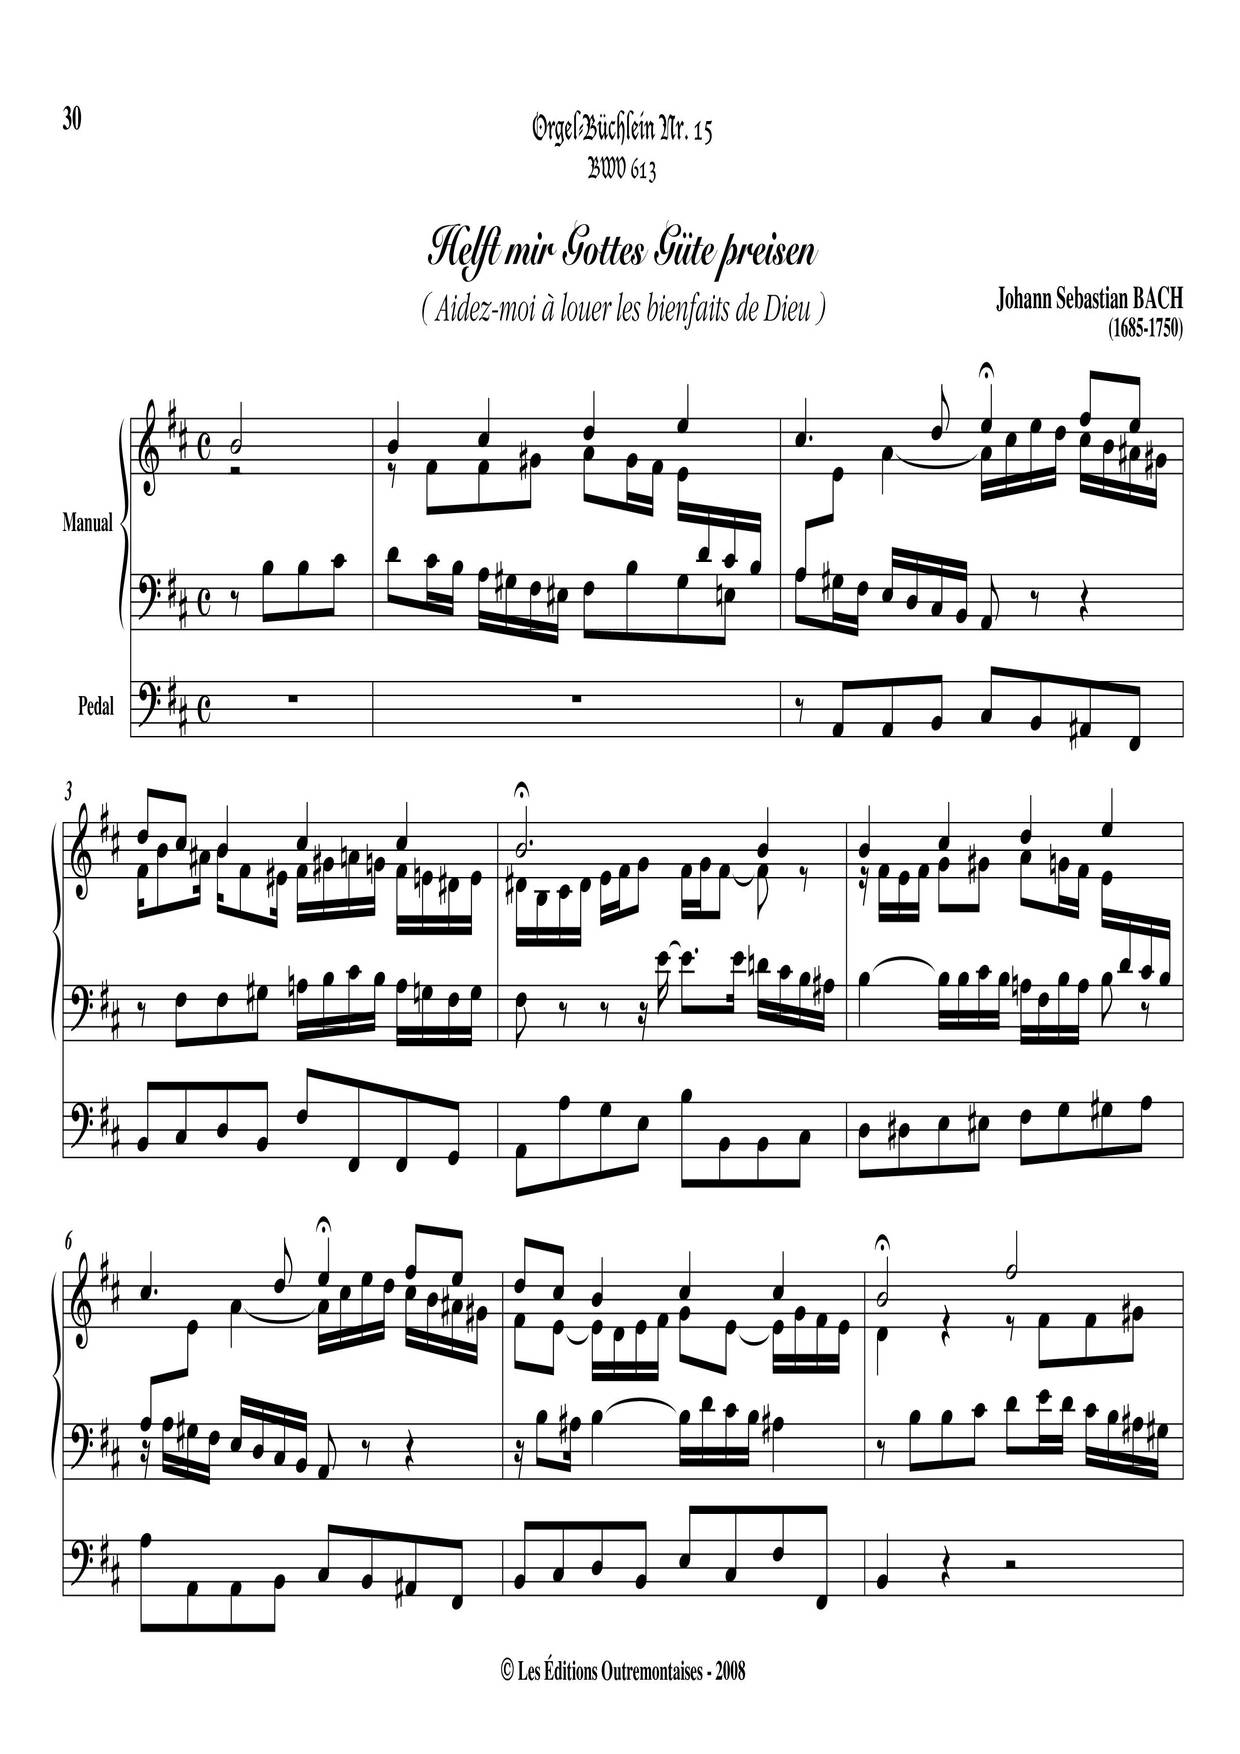 Chorale Prelude 'Helft Mir Gottes Gute Preisen', BWV 613 Score